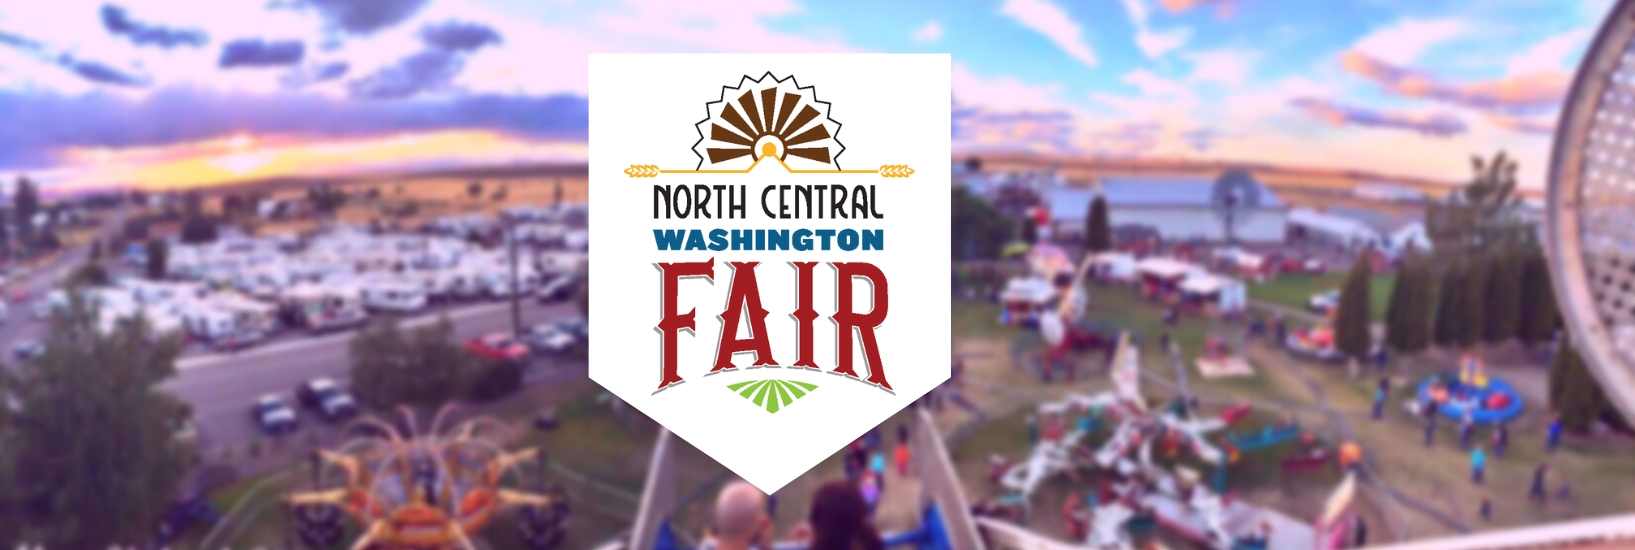 North Central Washington Fair